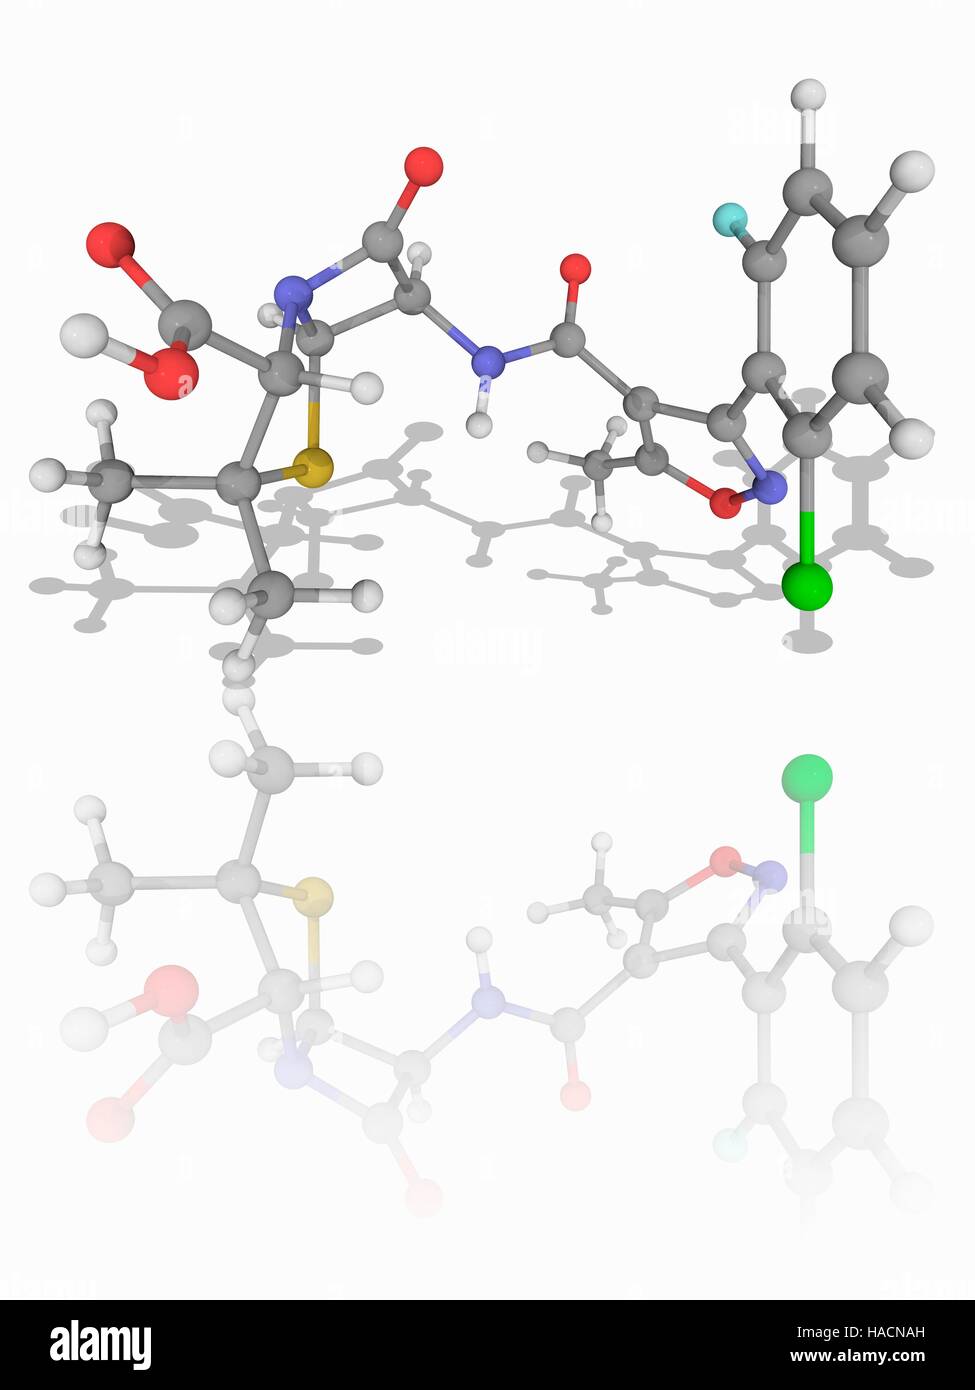 Floxacillin. Le modèle moléculaire de l'antibiotique med floxacillin (C19.H17.cl.F.N3.O5.S), également connu sous le nom de flucloxacillin. Il s'agit d'une bêta à spectre étroit-lactamines de la classe à la pénicilline. Les atomes sont représentés comme des sphères et sont codés par couleur : carbone (gris), l'hydrogène (blanc), l'azote (bleu), l'oxygène (rouge), le chlore (vert), le fluor (cyan) et le soufre (jaune). L'illustration. Banque D'Images